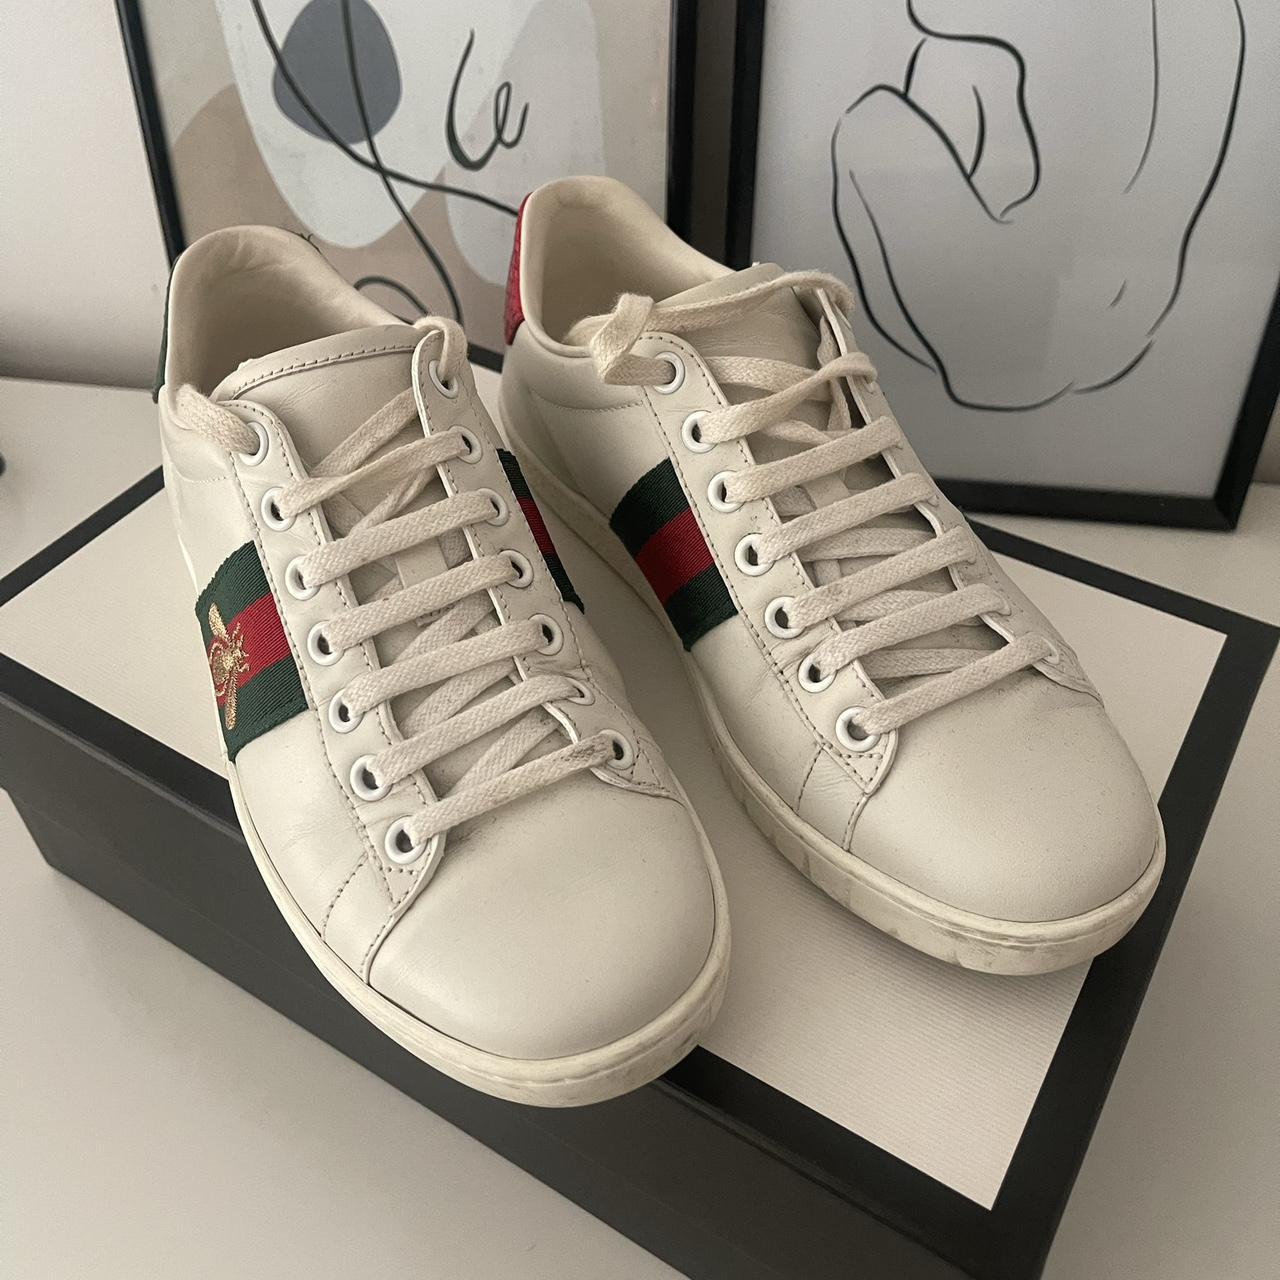 Gucci Ace Sneakers Size IT 34.5 Still in great... - Depop